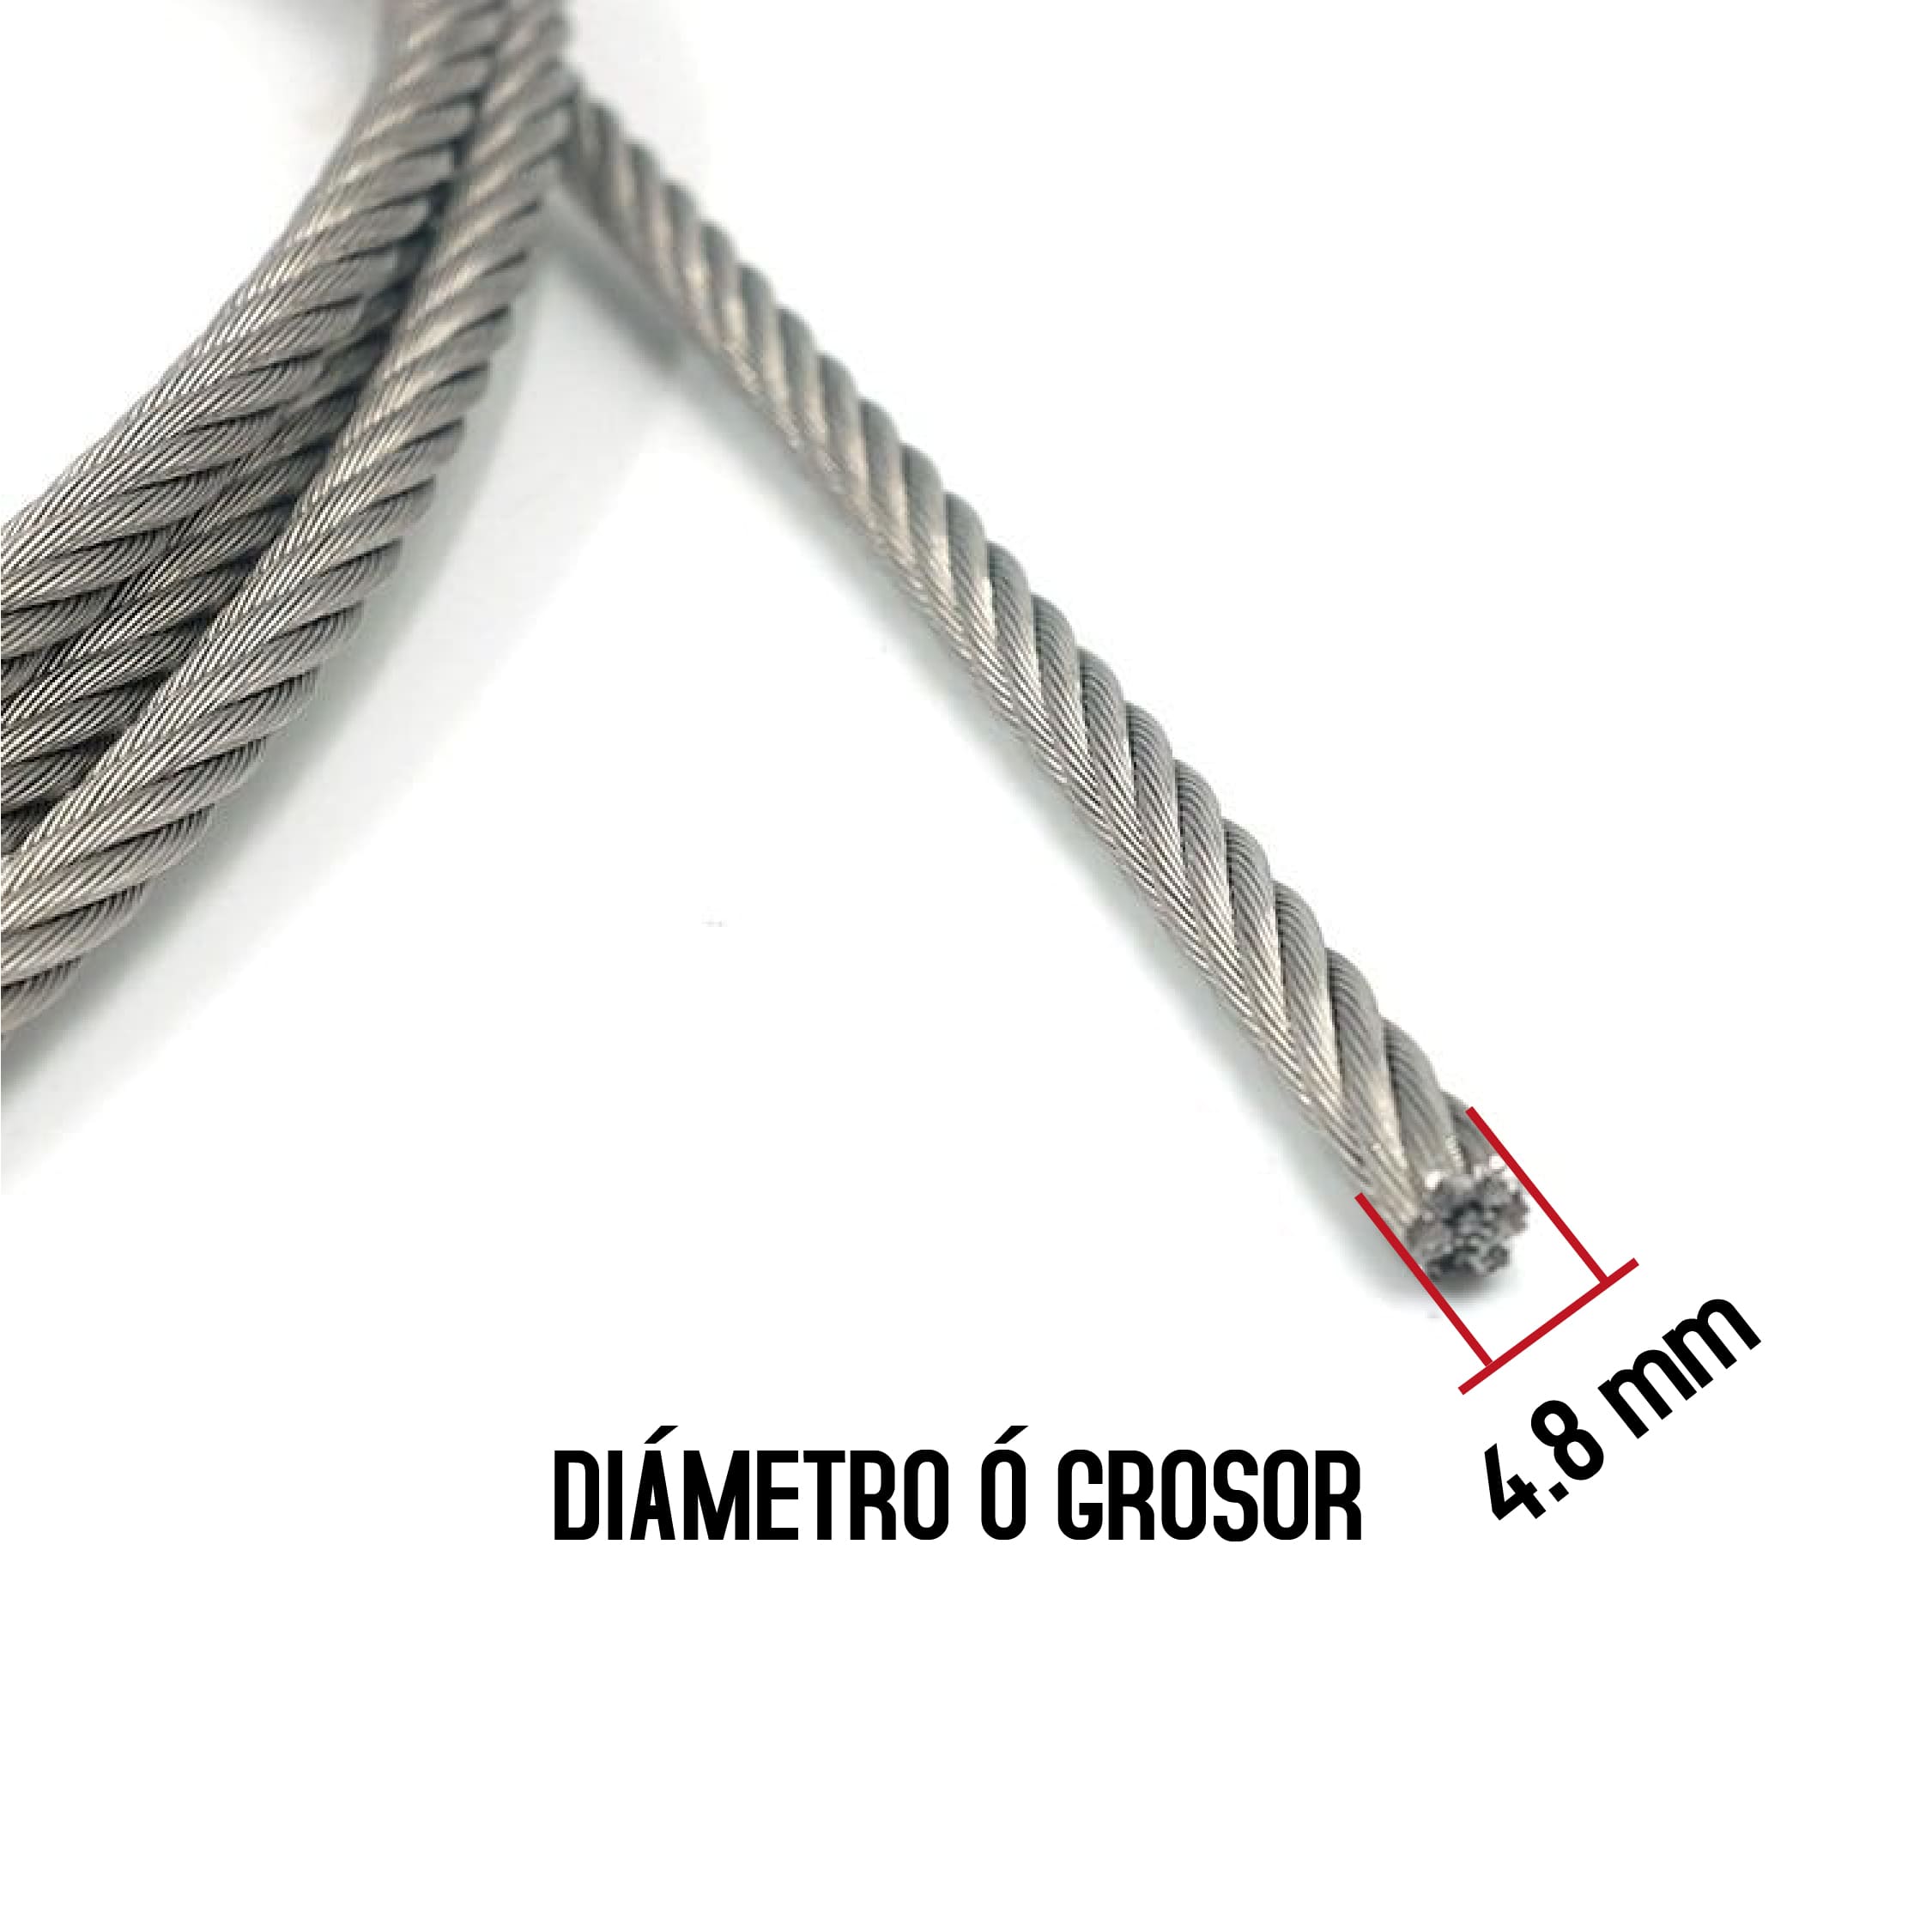 Cable Acero 8,3 mm por metro